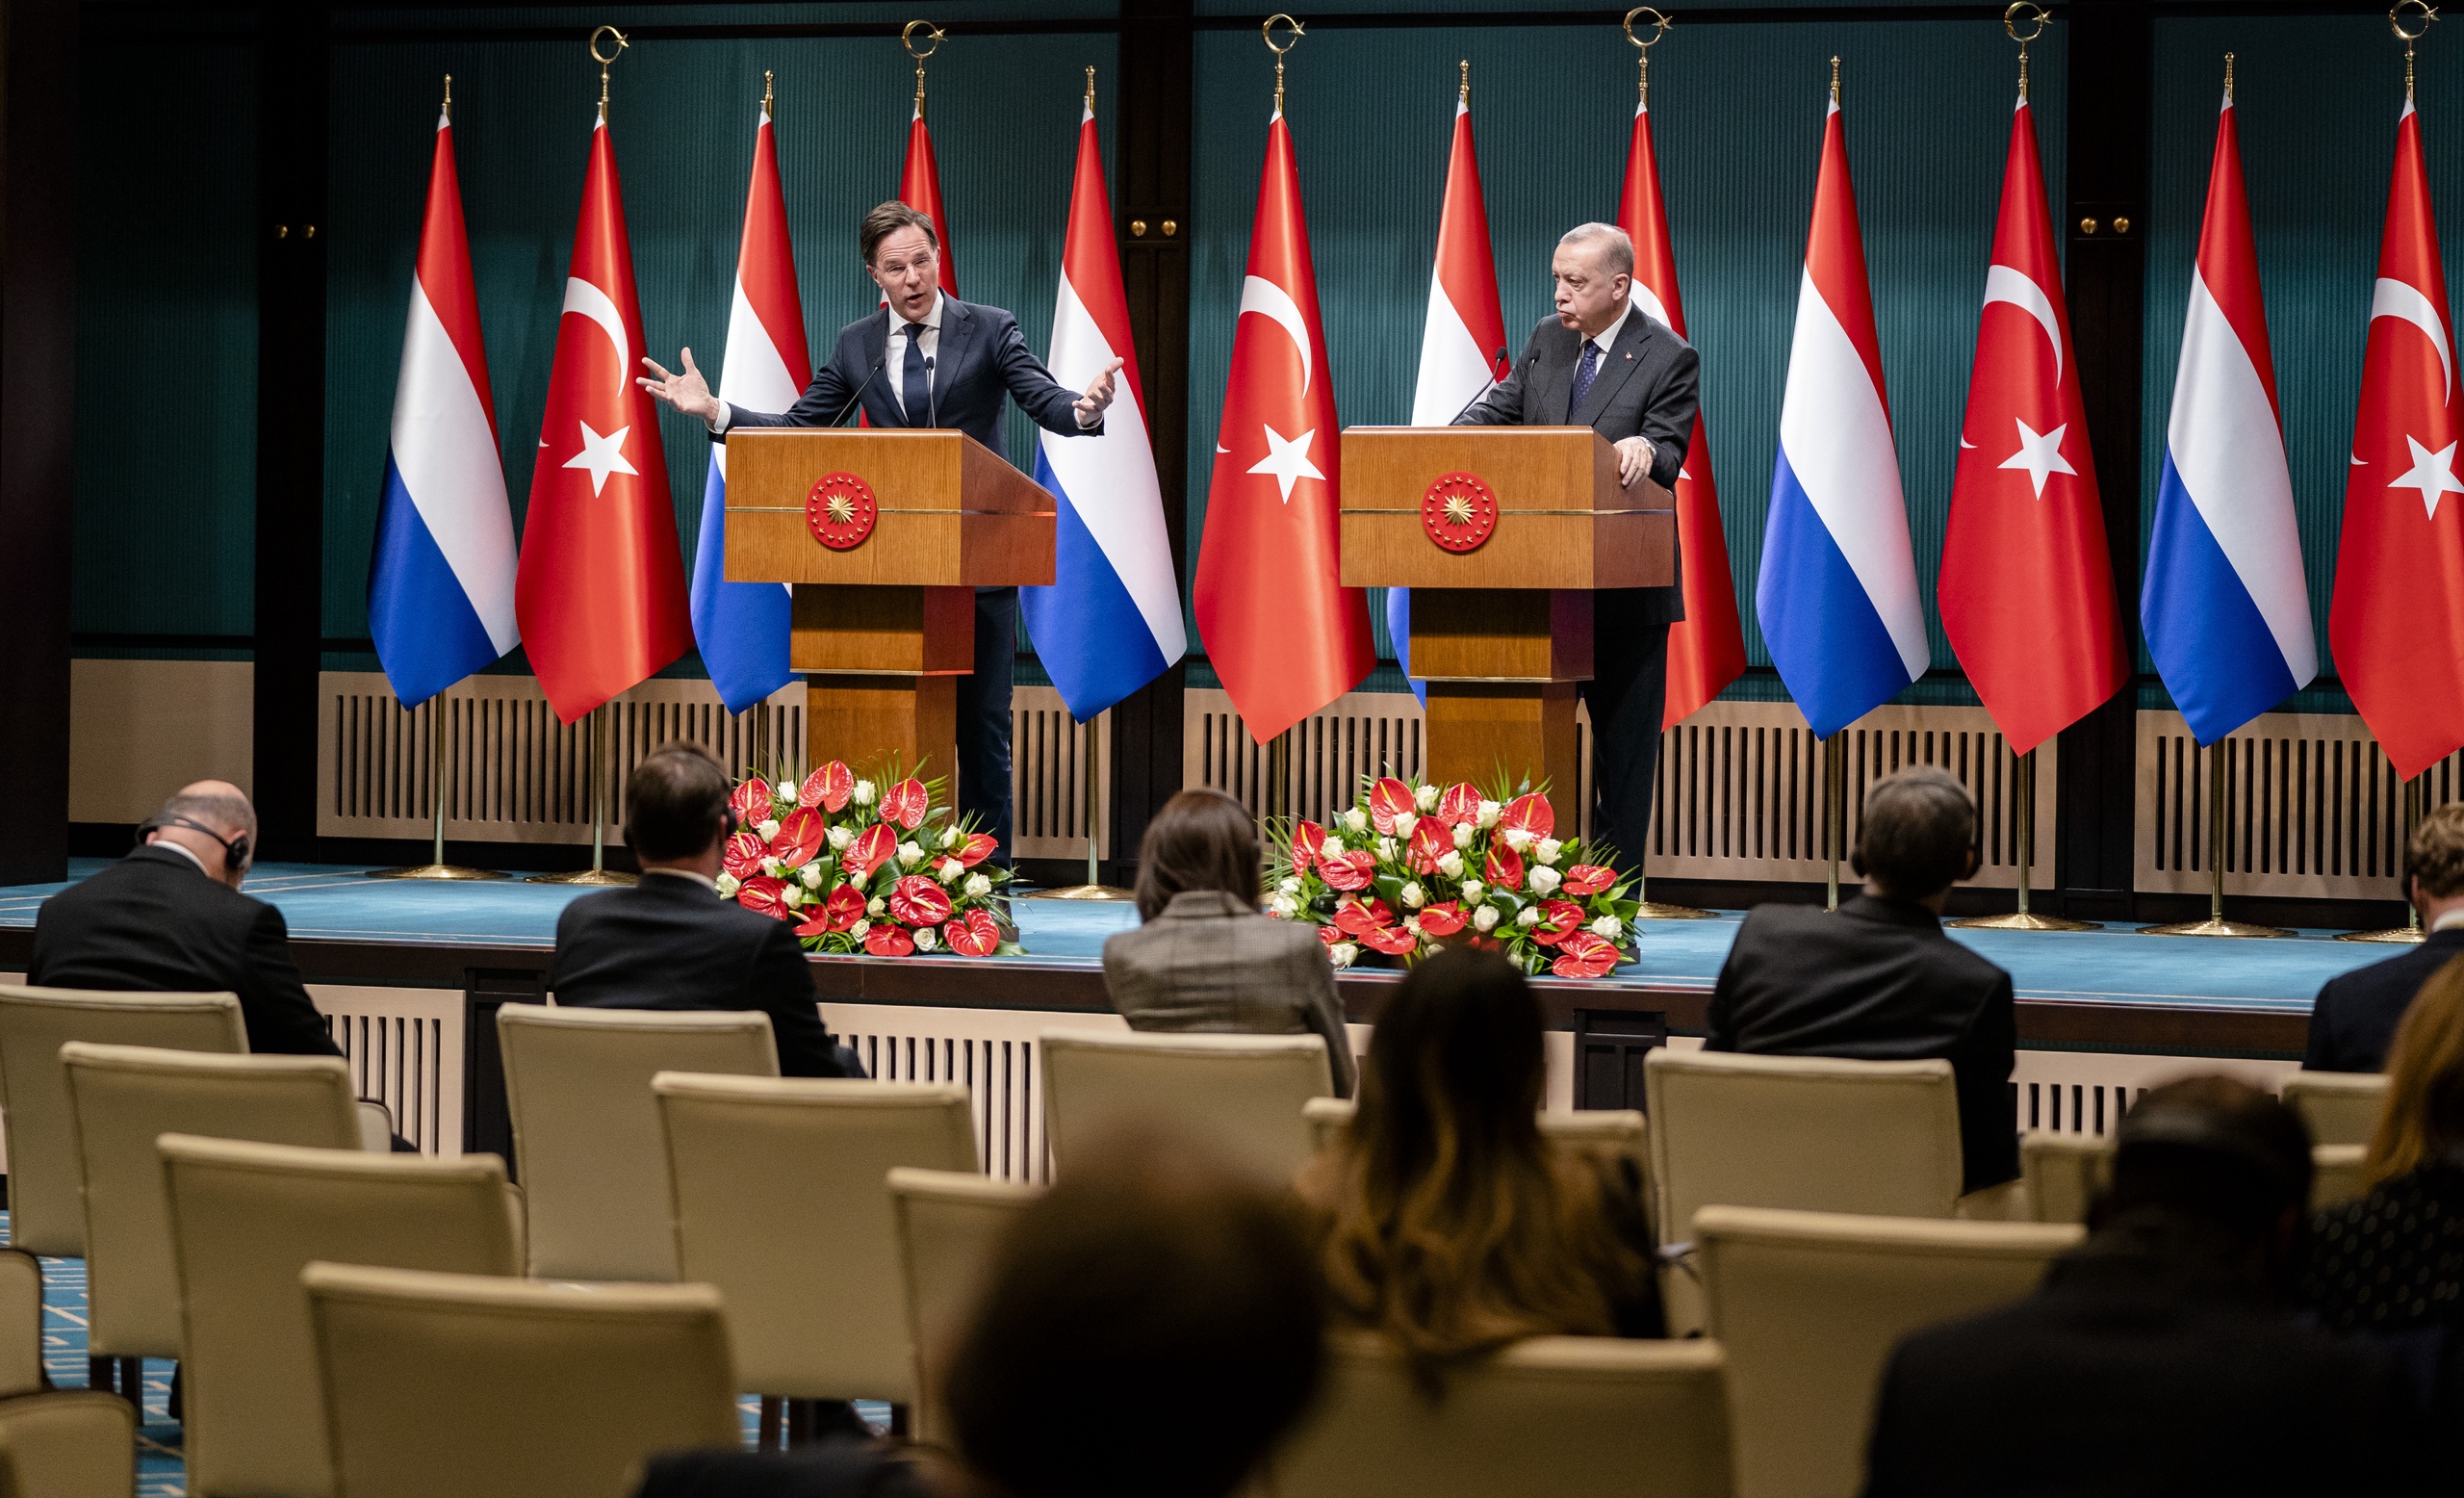 De Nederlandse ambassadeur in Turkije is op het matje geroepen vanwege protesten in Den Haag, waar Pegida-voorman Edwin Wagensveld afgelopen zondag een koran verscheurde. Turkije spreekt van een gruwelijke daad, en heeft derhalve ambassadeur Joep Wijnands ontboden in Ankara.